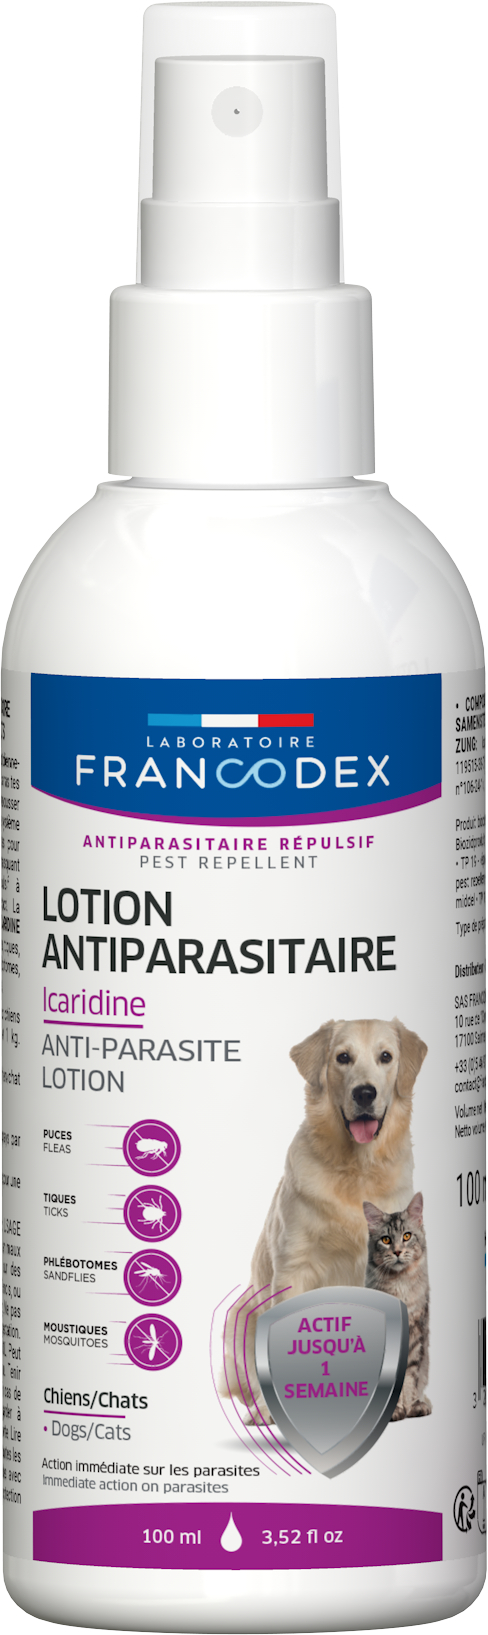 Francodex Lotion Icaridine pour Chien et Chat